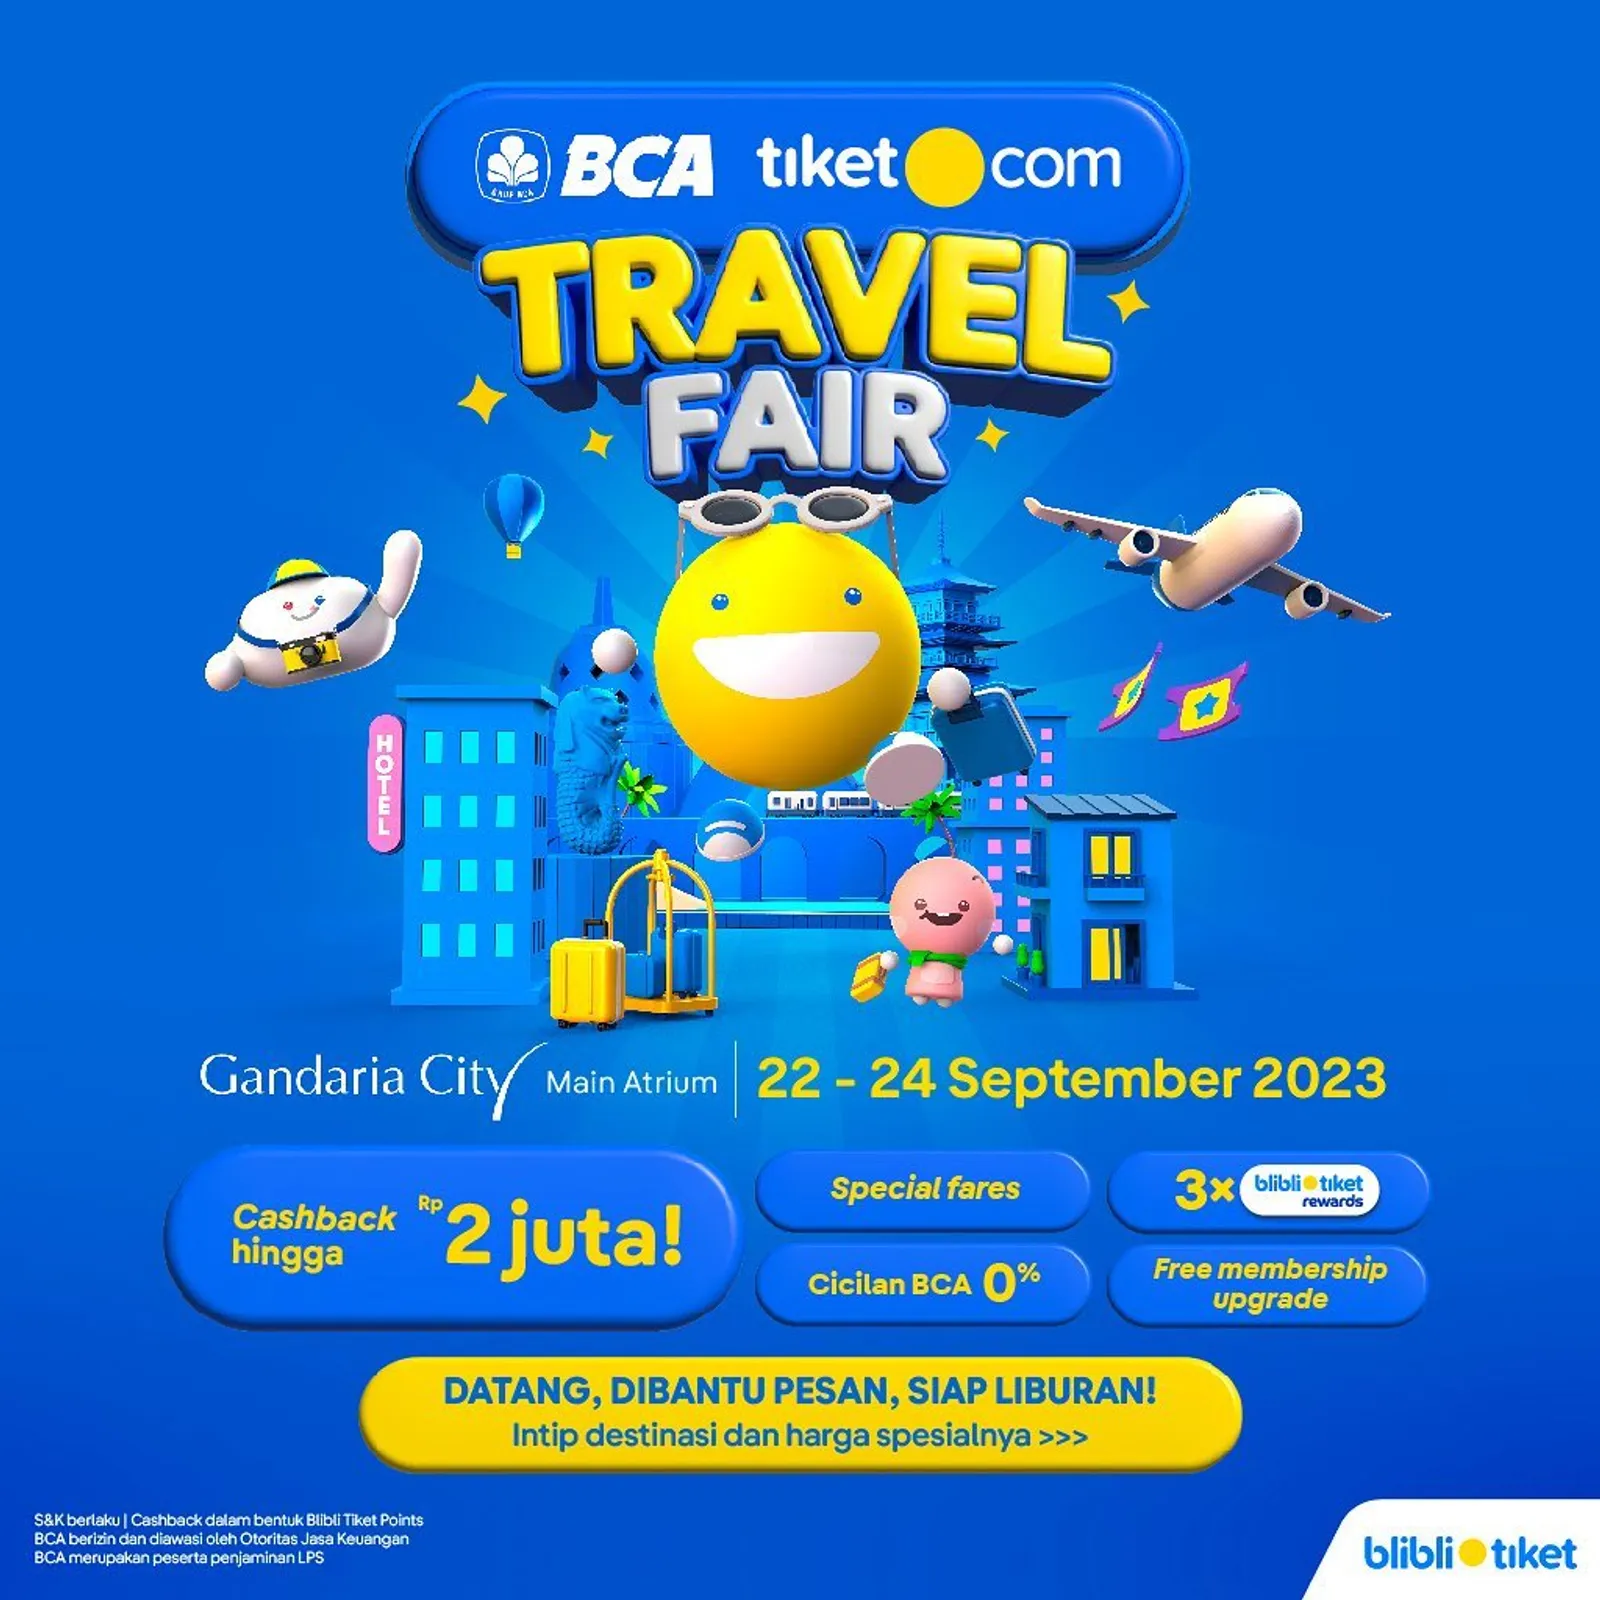 Yuk, Beli Tiket Murah di BCA tiket.com Travel Fair 2023!